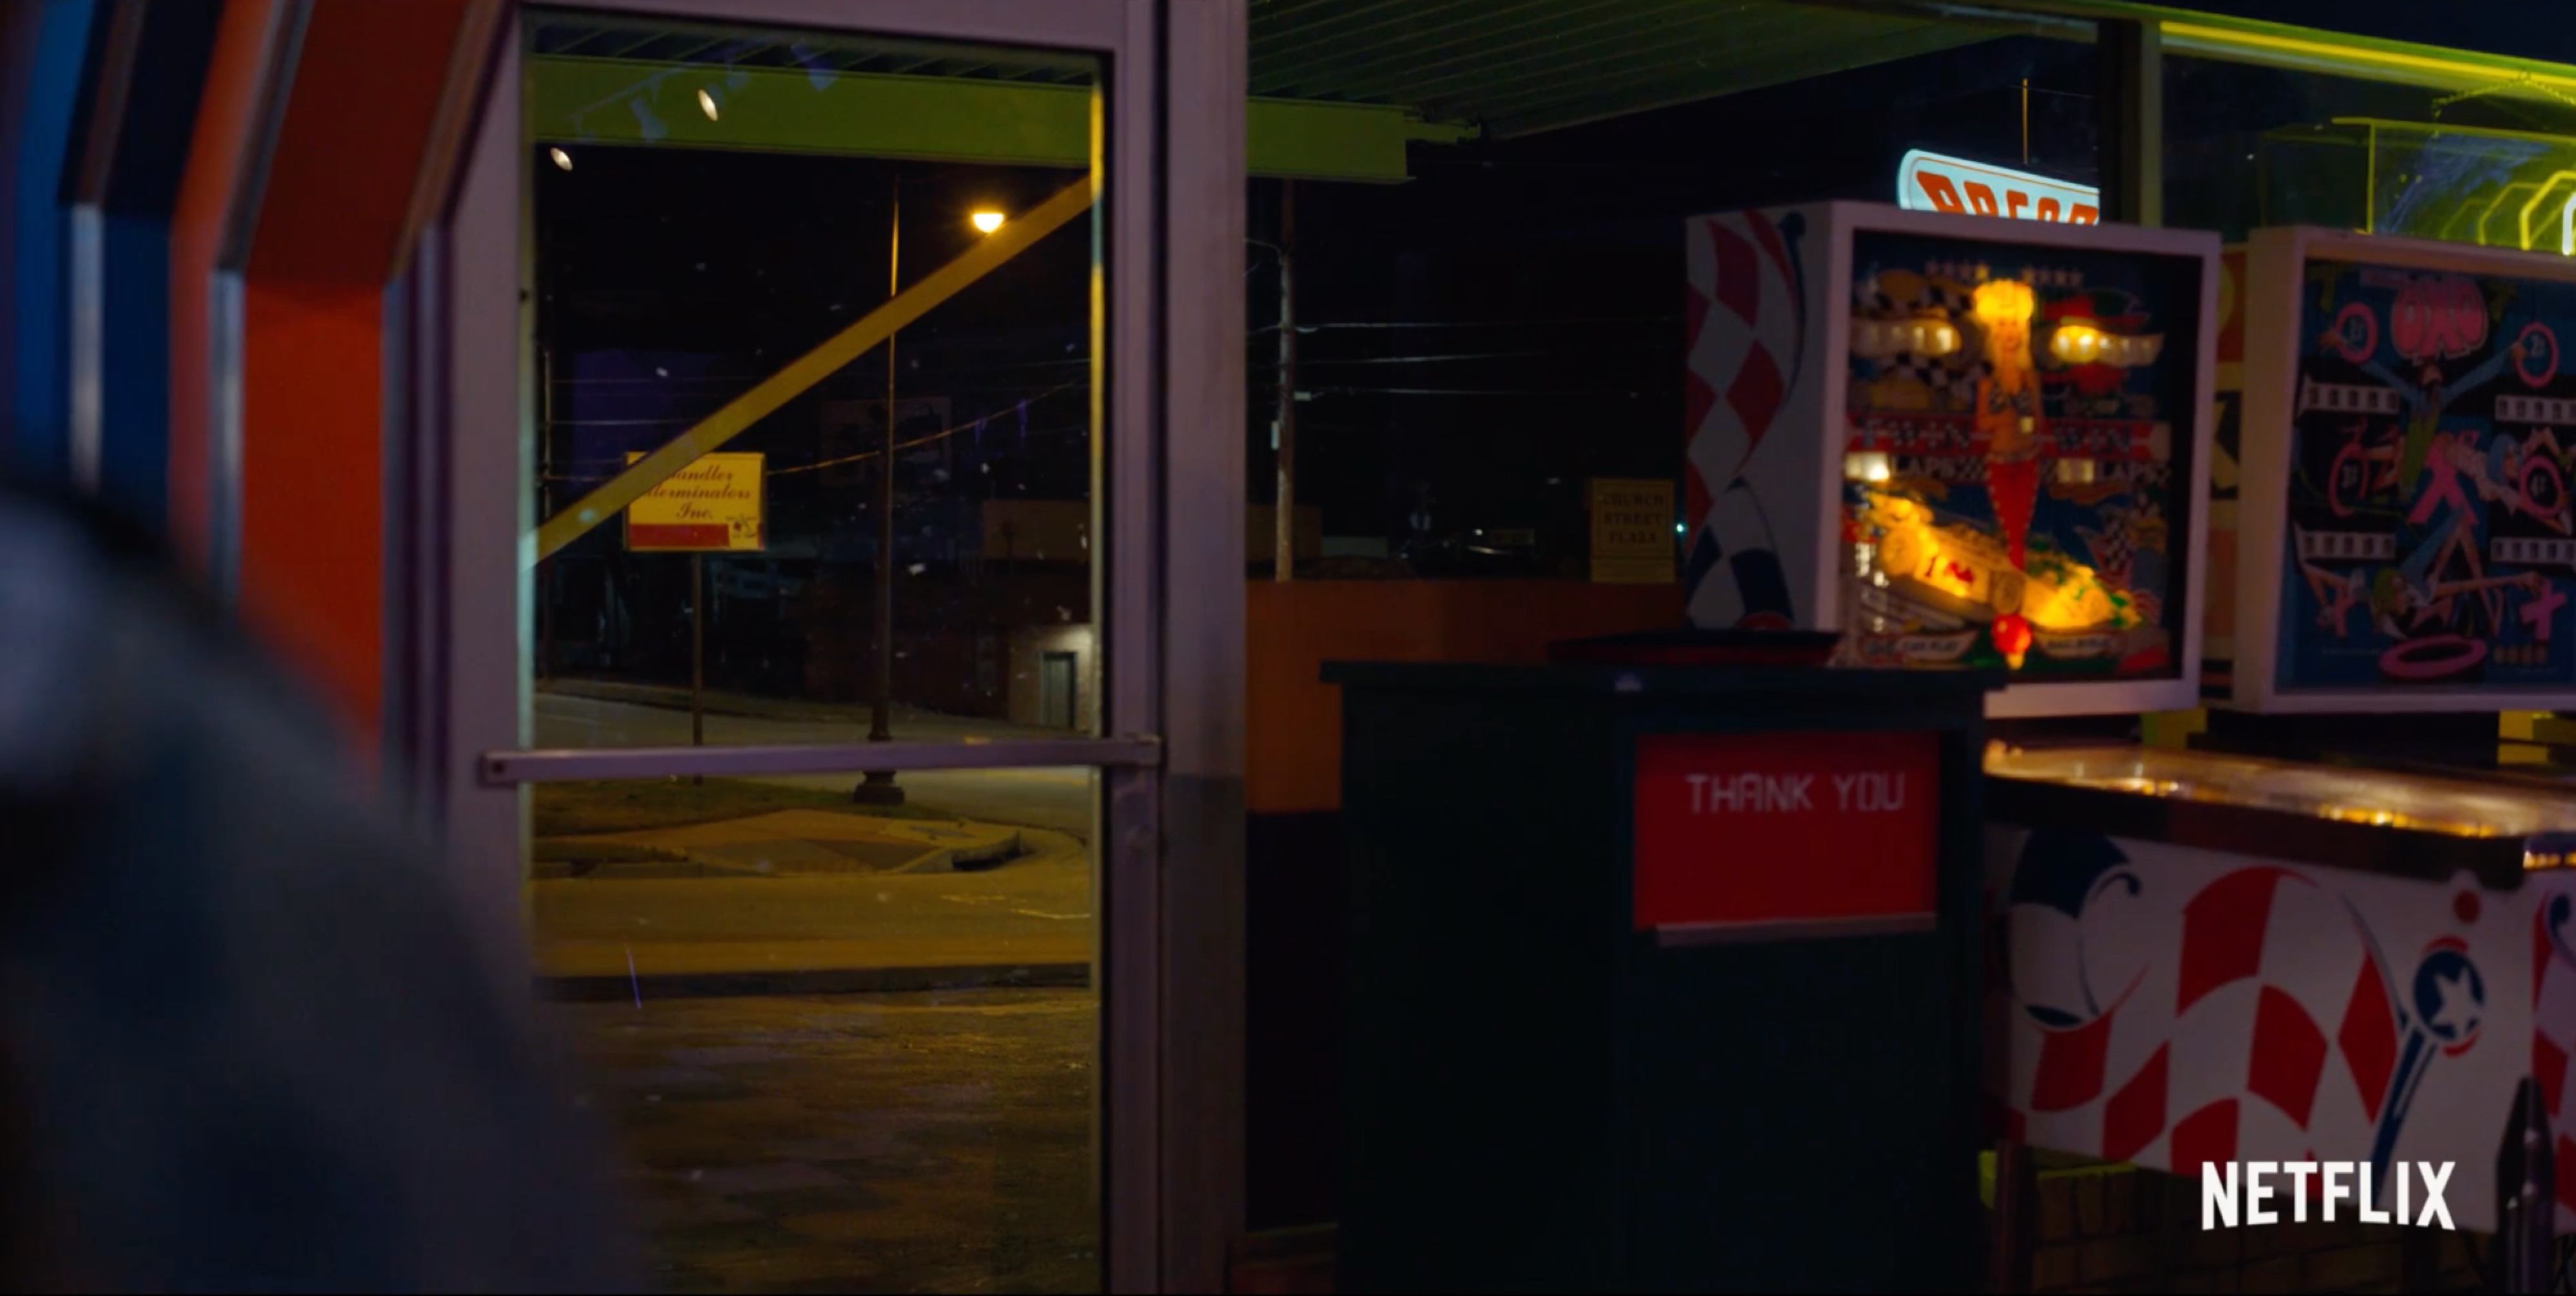 Stranger Things 2 Trailer Breakdown: Comic-Con Trailer Secrets Revealed